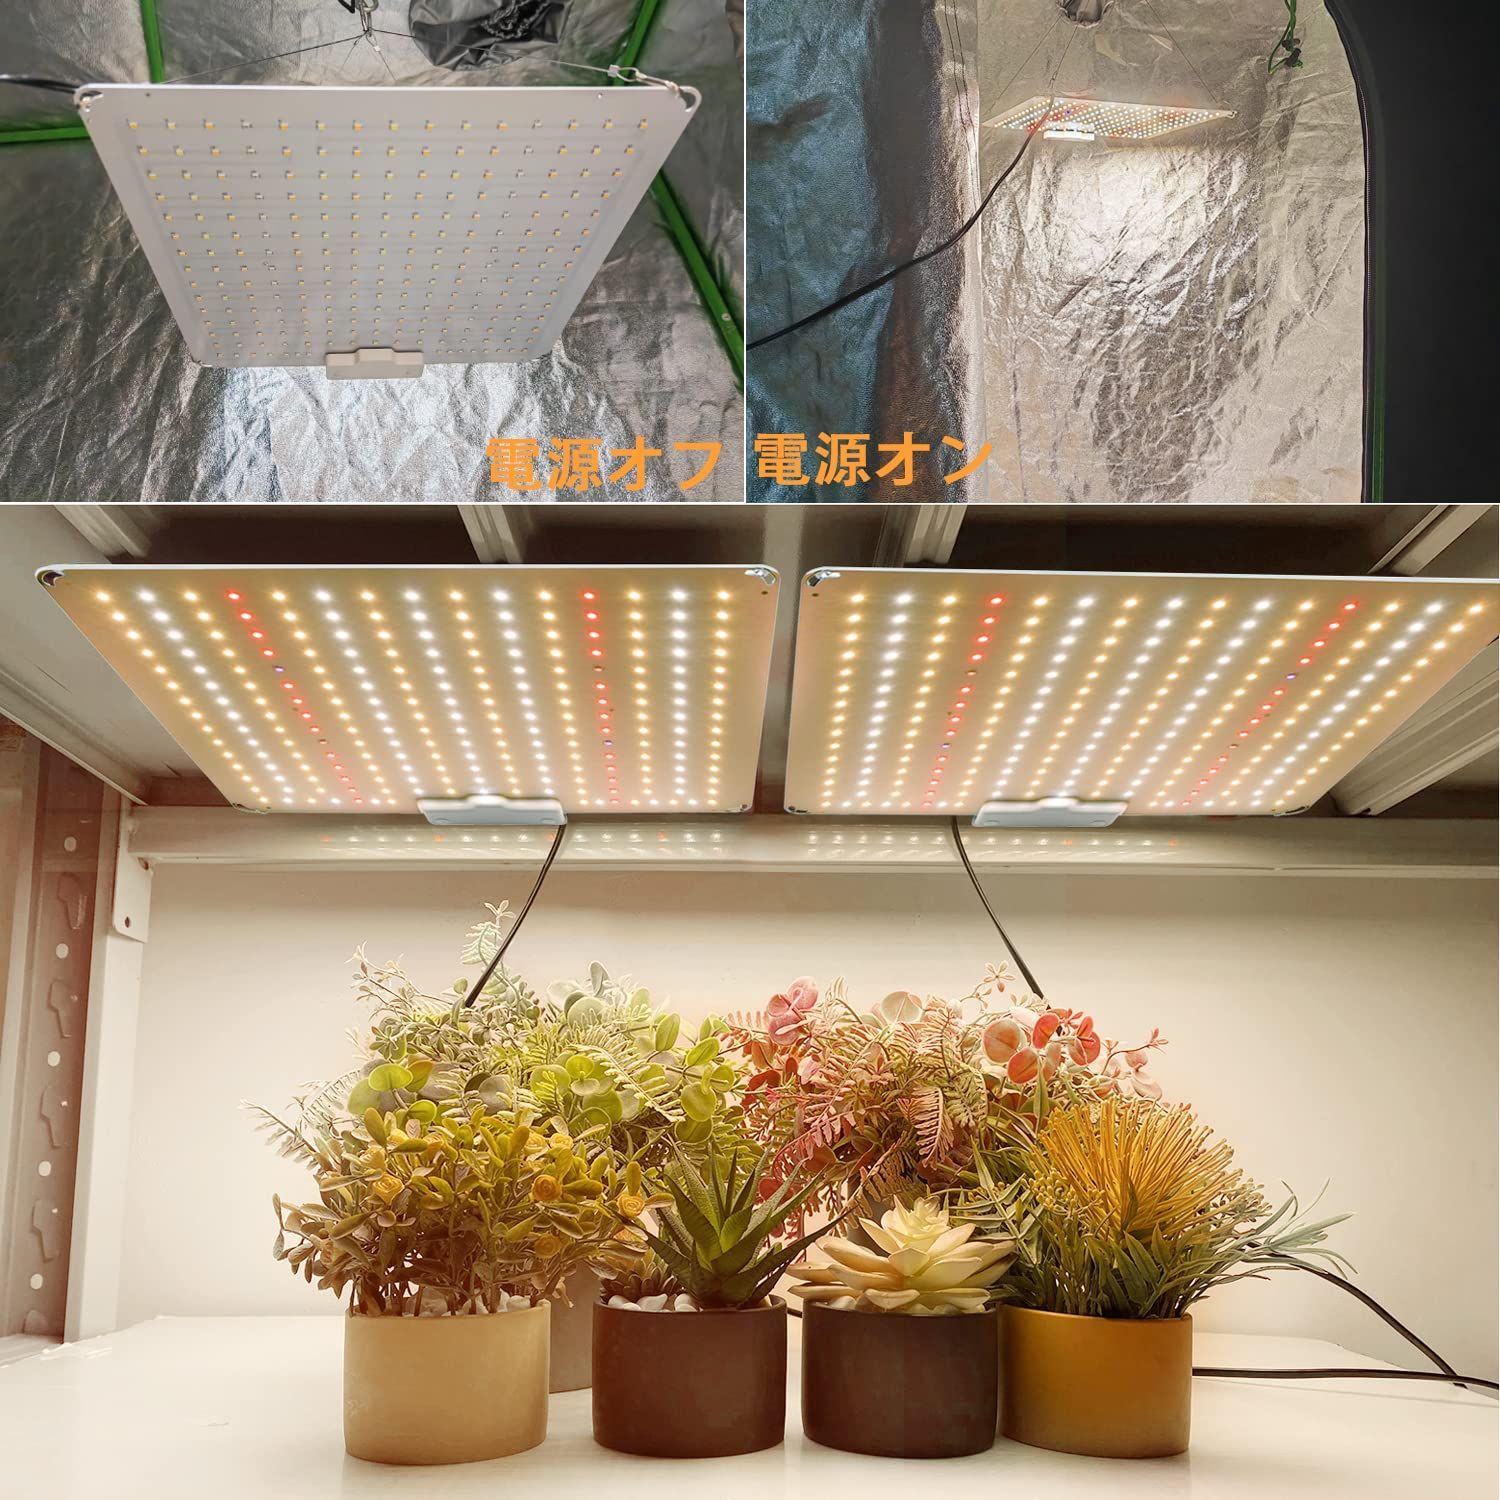 GREENSINDOOR LED植物育成ライト 600W相当 UV/IR 植物ライト 室内栽培